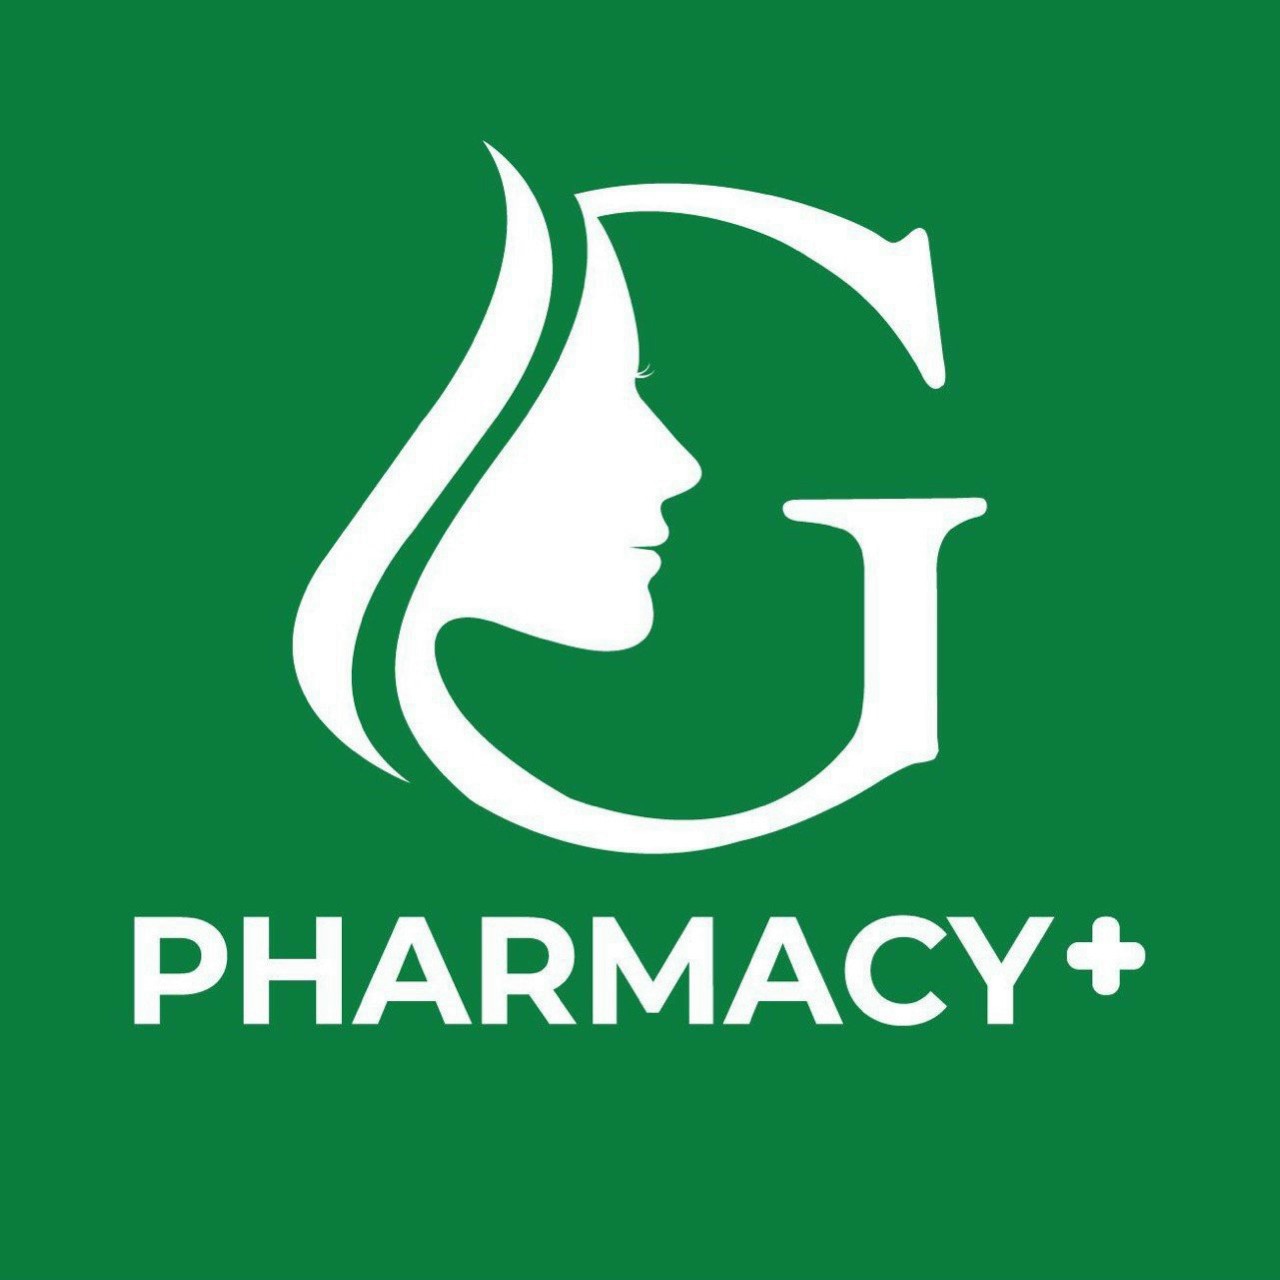 Đội ngũ chuyên gia G Pharmacy+